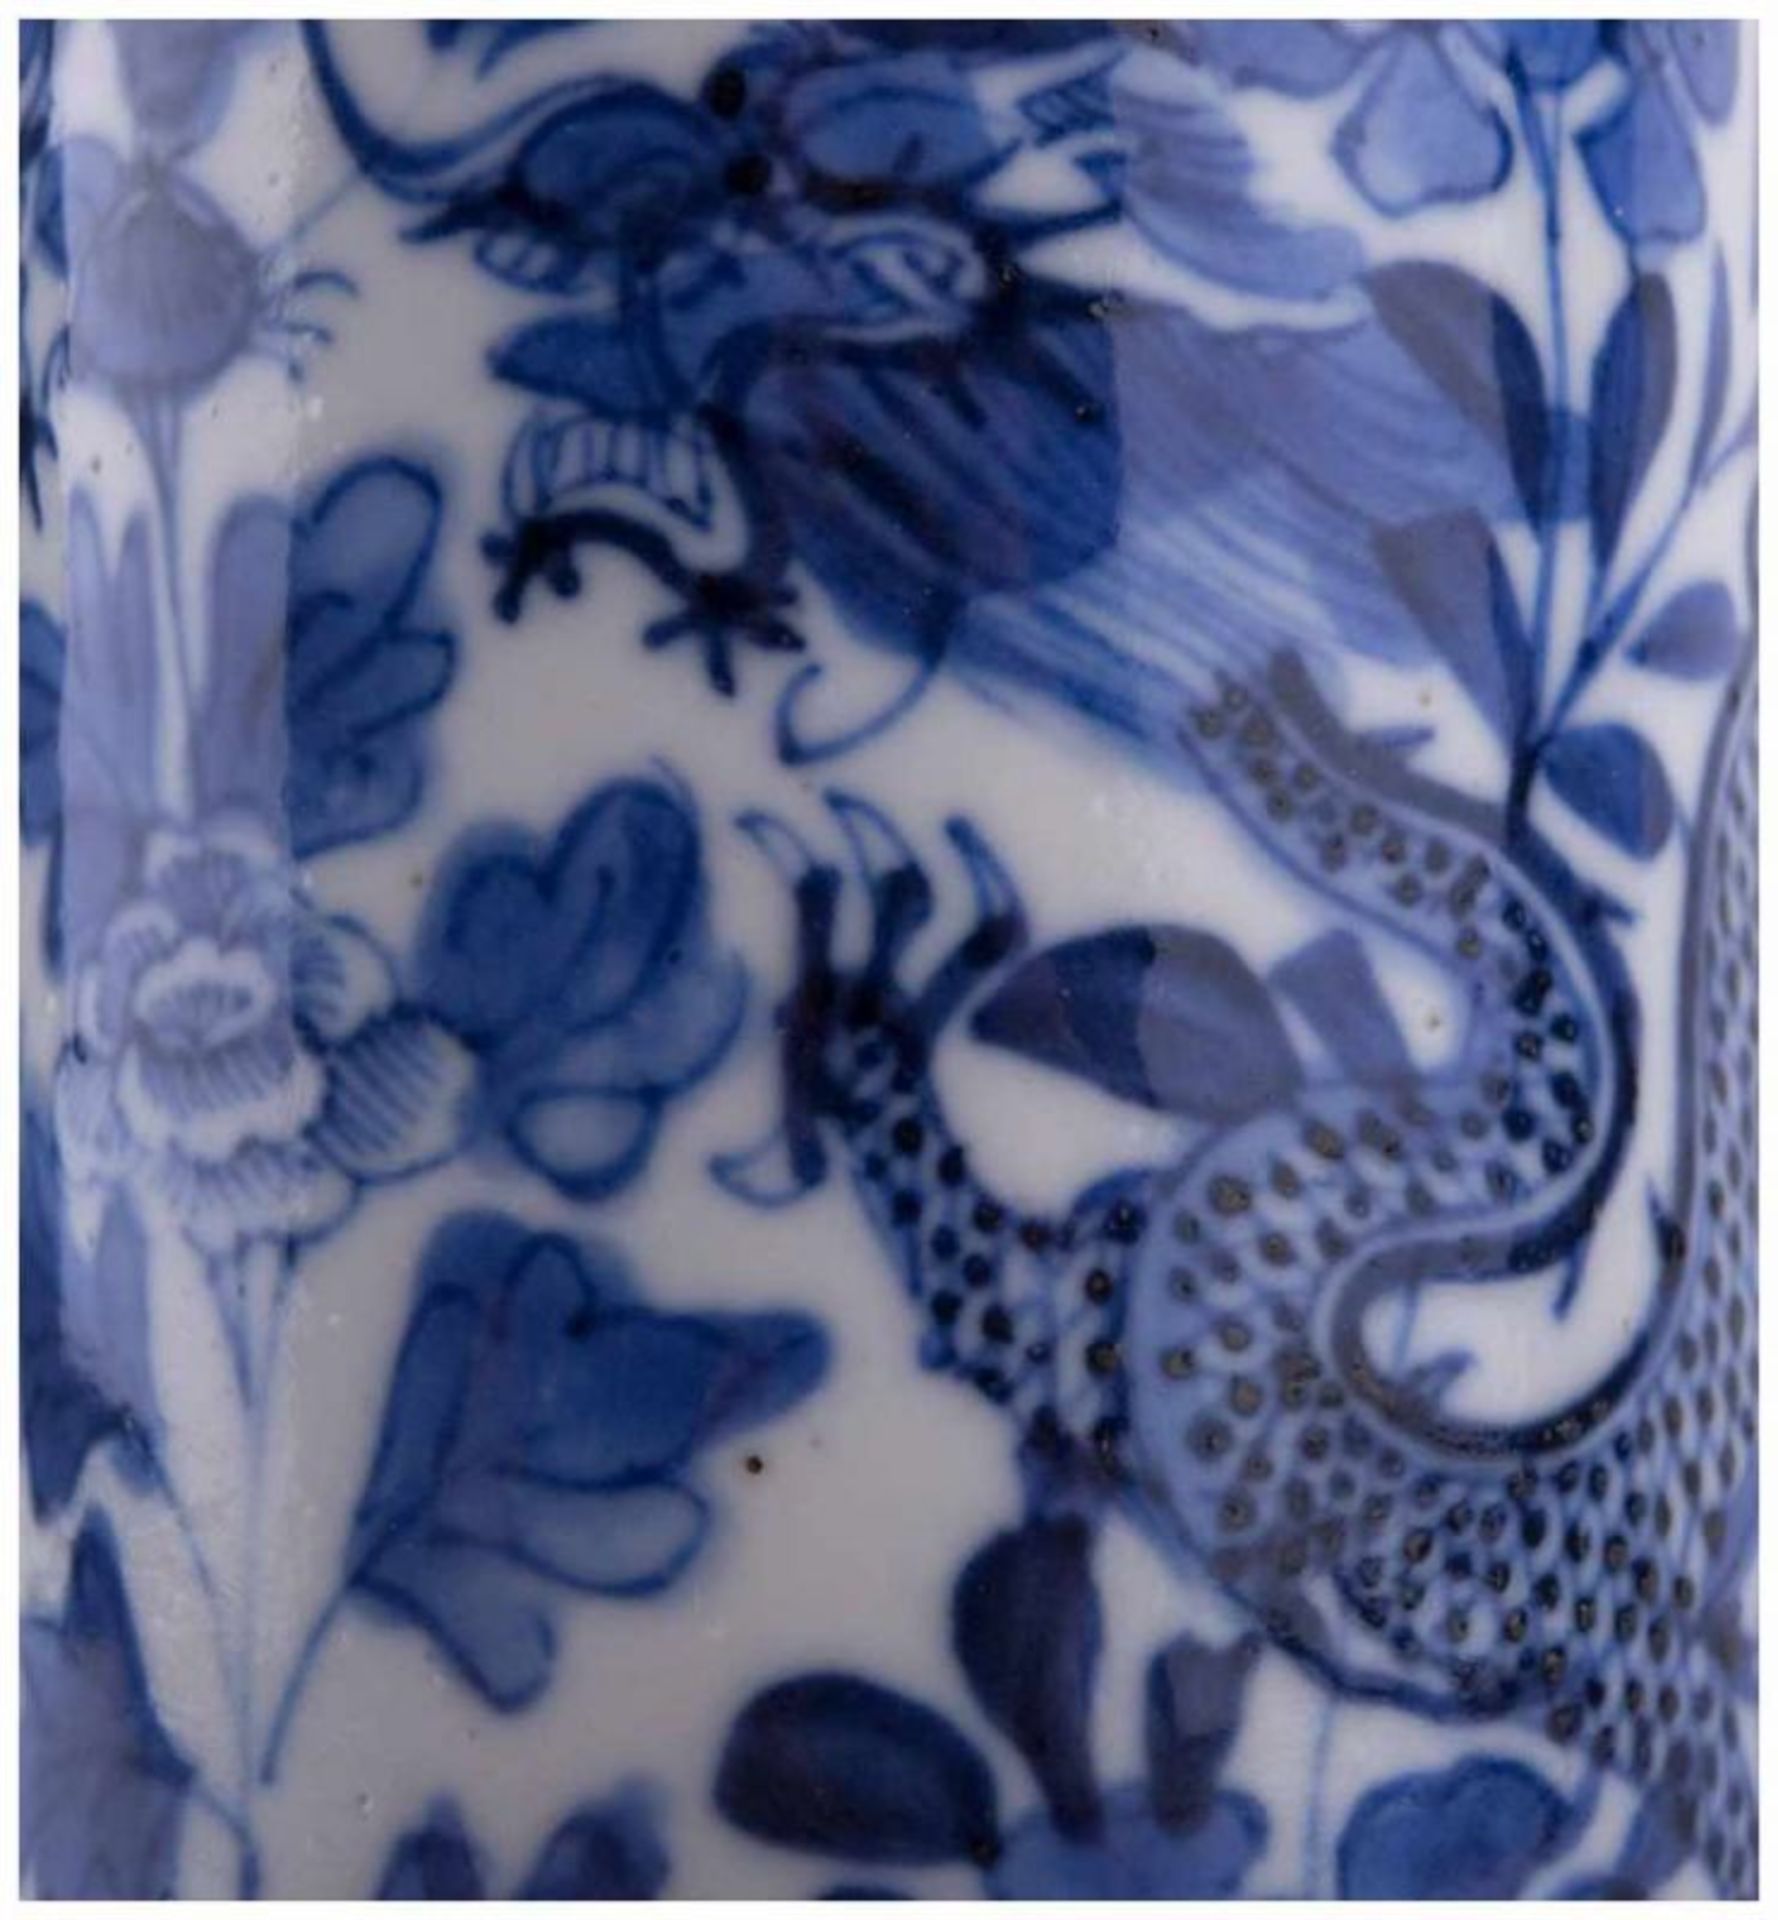 Stangenvase China 19./20. Jhd. / Vase, China 19th/20th century - Blau-weiß Malerei [...] - Bild 4 aus 10